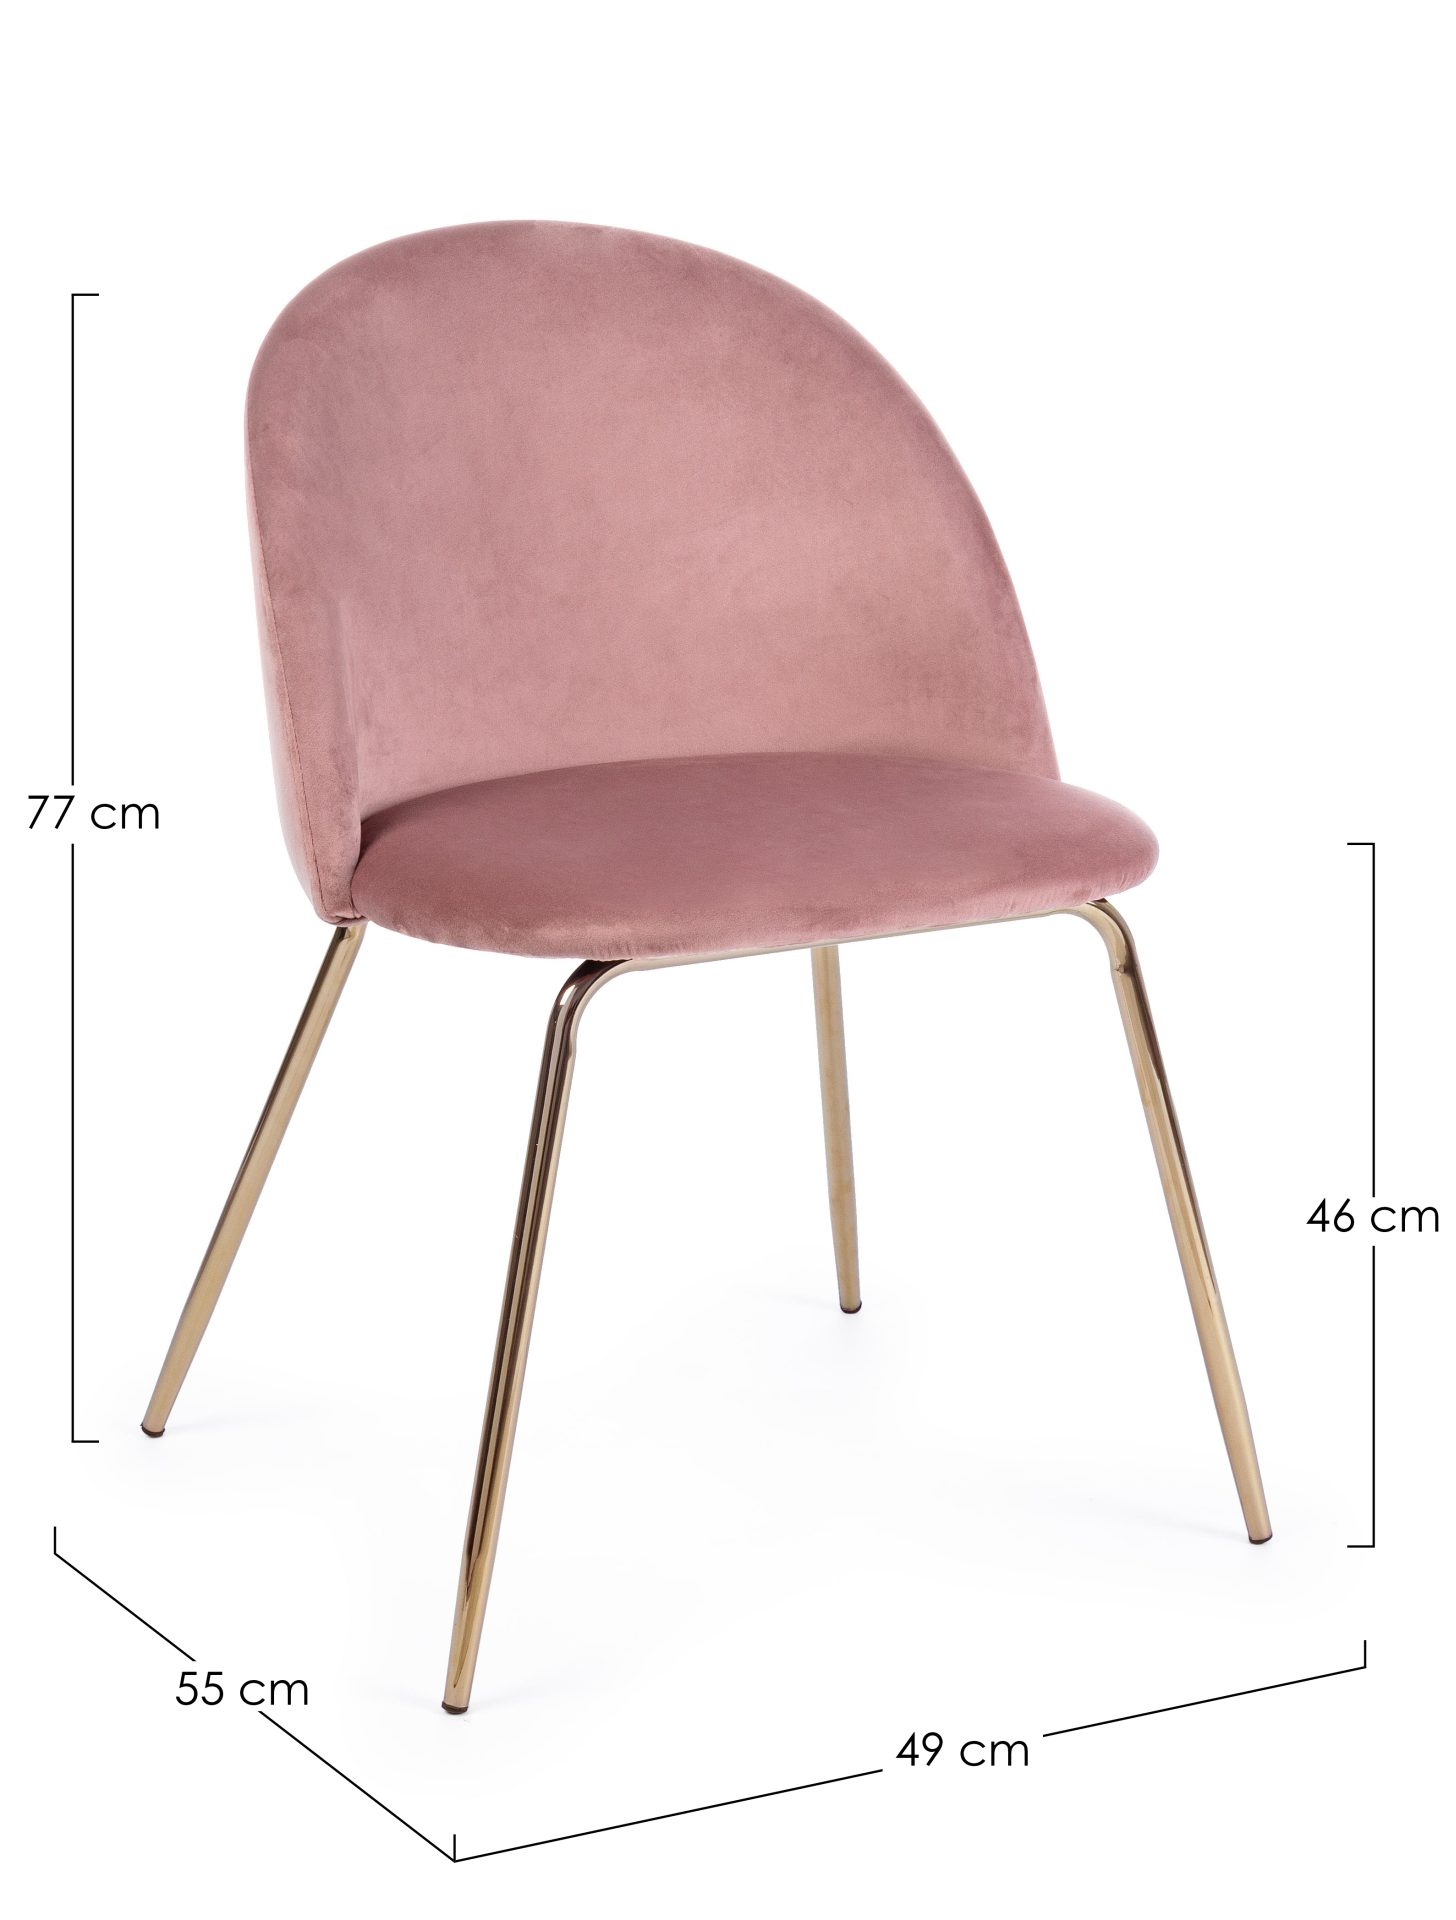 Der Esszimmerstuhl Tanya überzeugt mit seinem modernem Design. Gefertigt wurde der Stuhl aus Samt, welcher einen rosa Farbton besitzt. Das Gestell ist aus Metall und ist Gold. Die Sitzhöhe beträgt 46 cm.